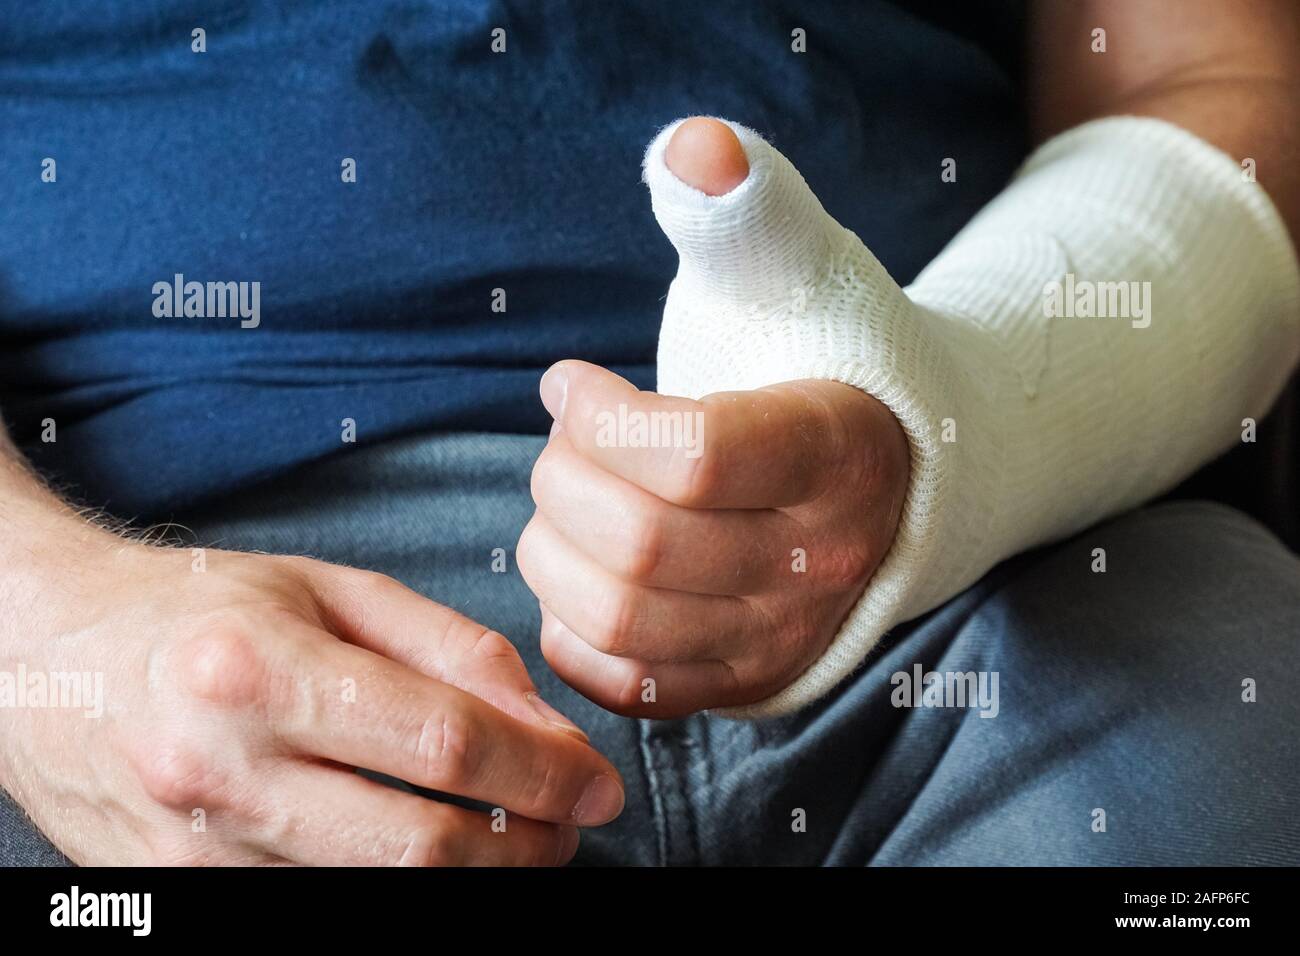 Homme avec plâtre sur fracture de la main, pouce cassé, fracture du poignet Banque D'Images